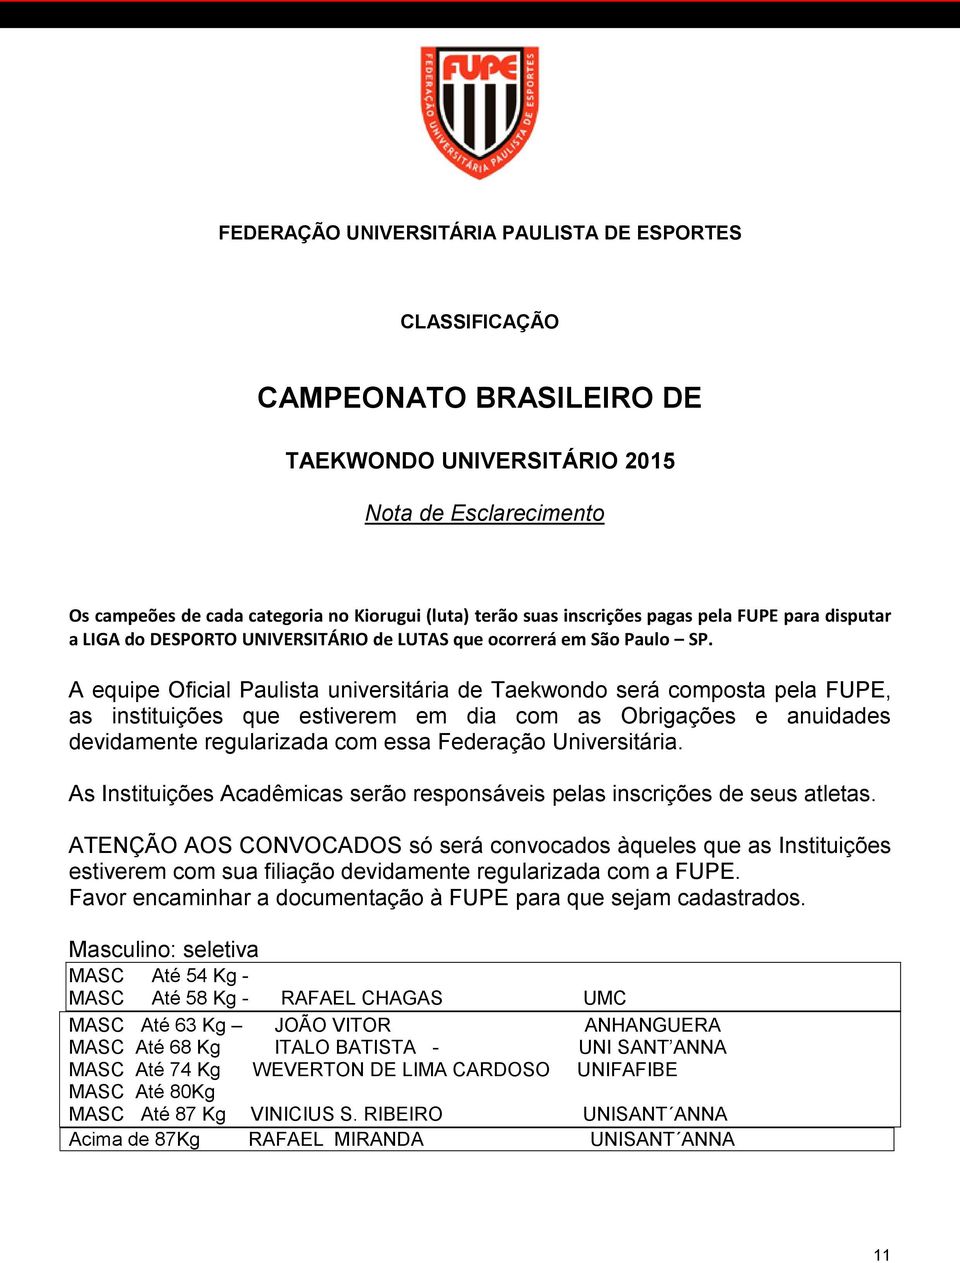 A equipe Oficial Paulista universitária de Taekwondo será composta pela FUPE, as instituições que estiverem em dia com as Obrigações e anuidades devidamente regularizada com essa Federação